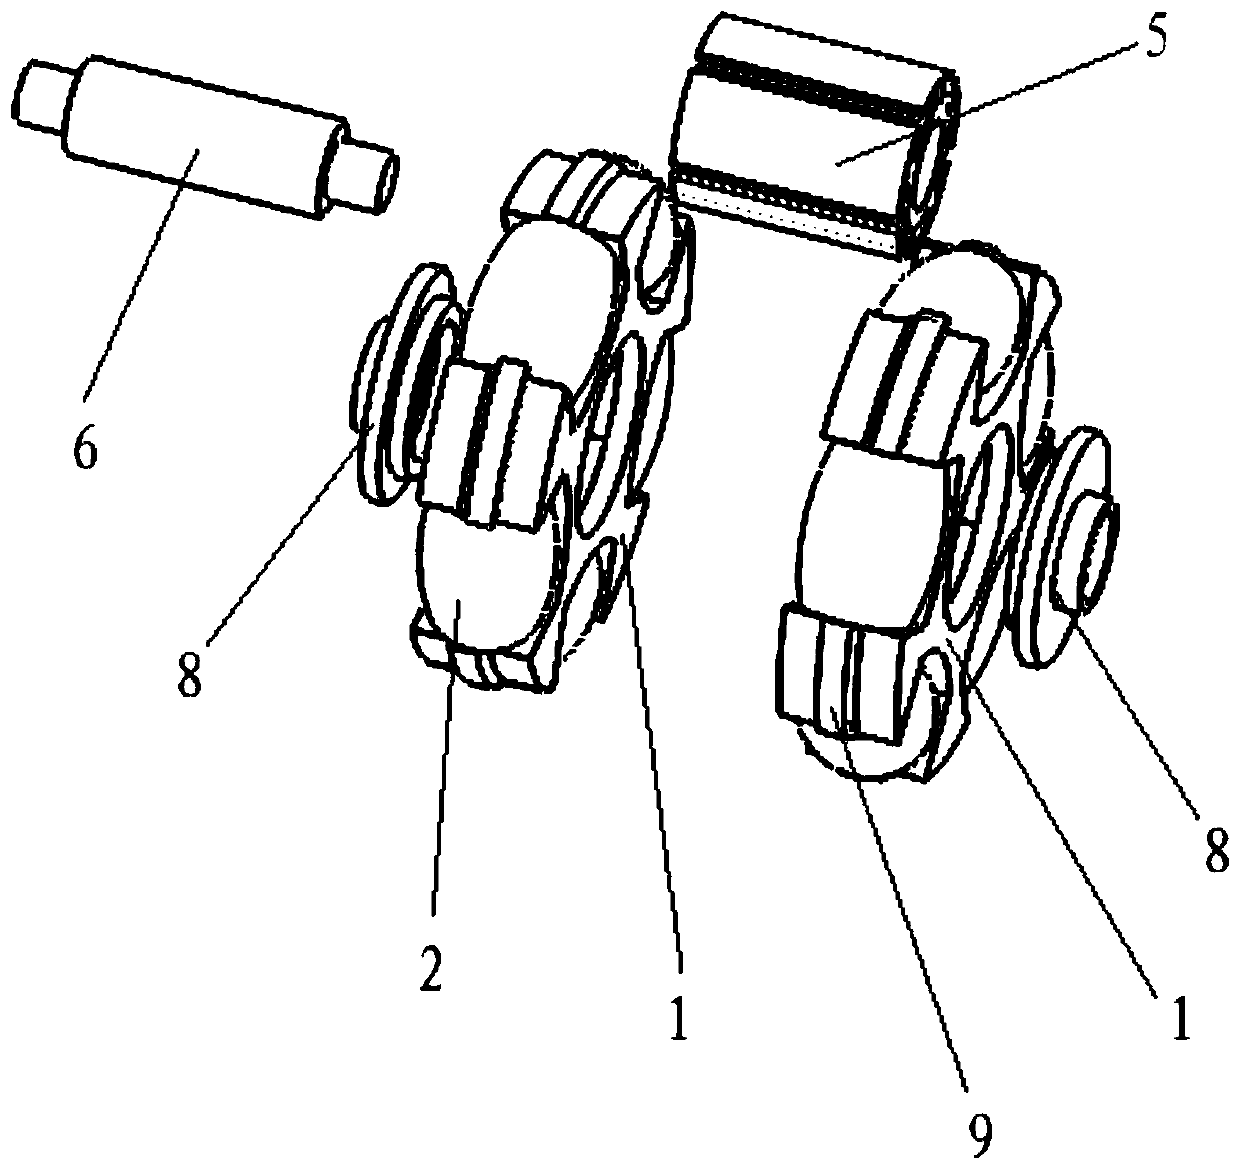 A hub drive motor based on mecanum wheel